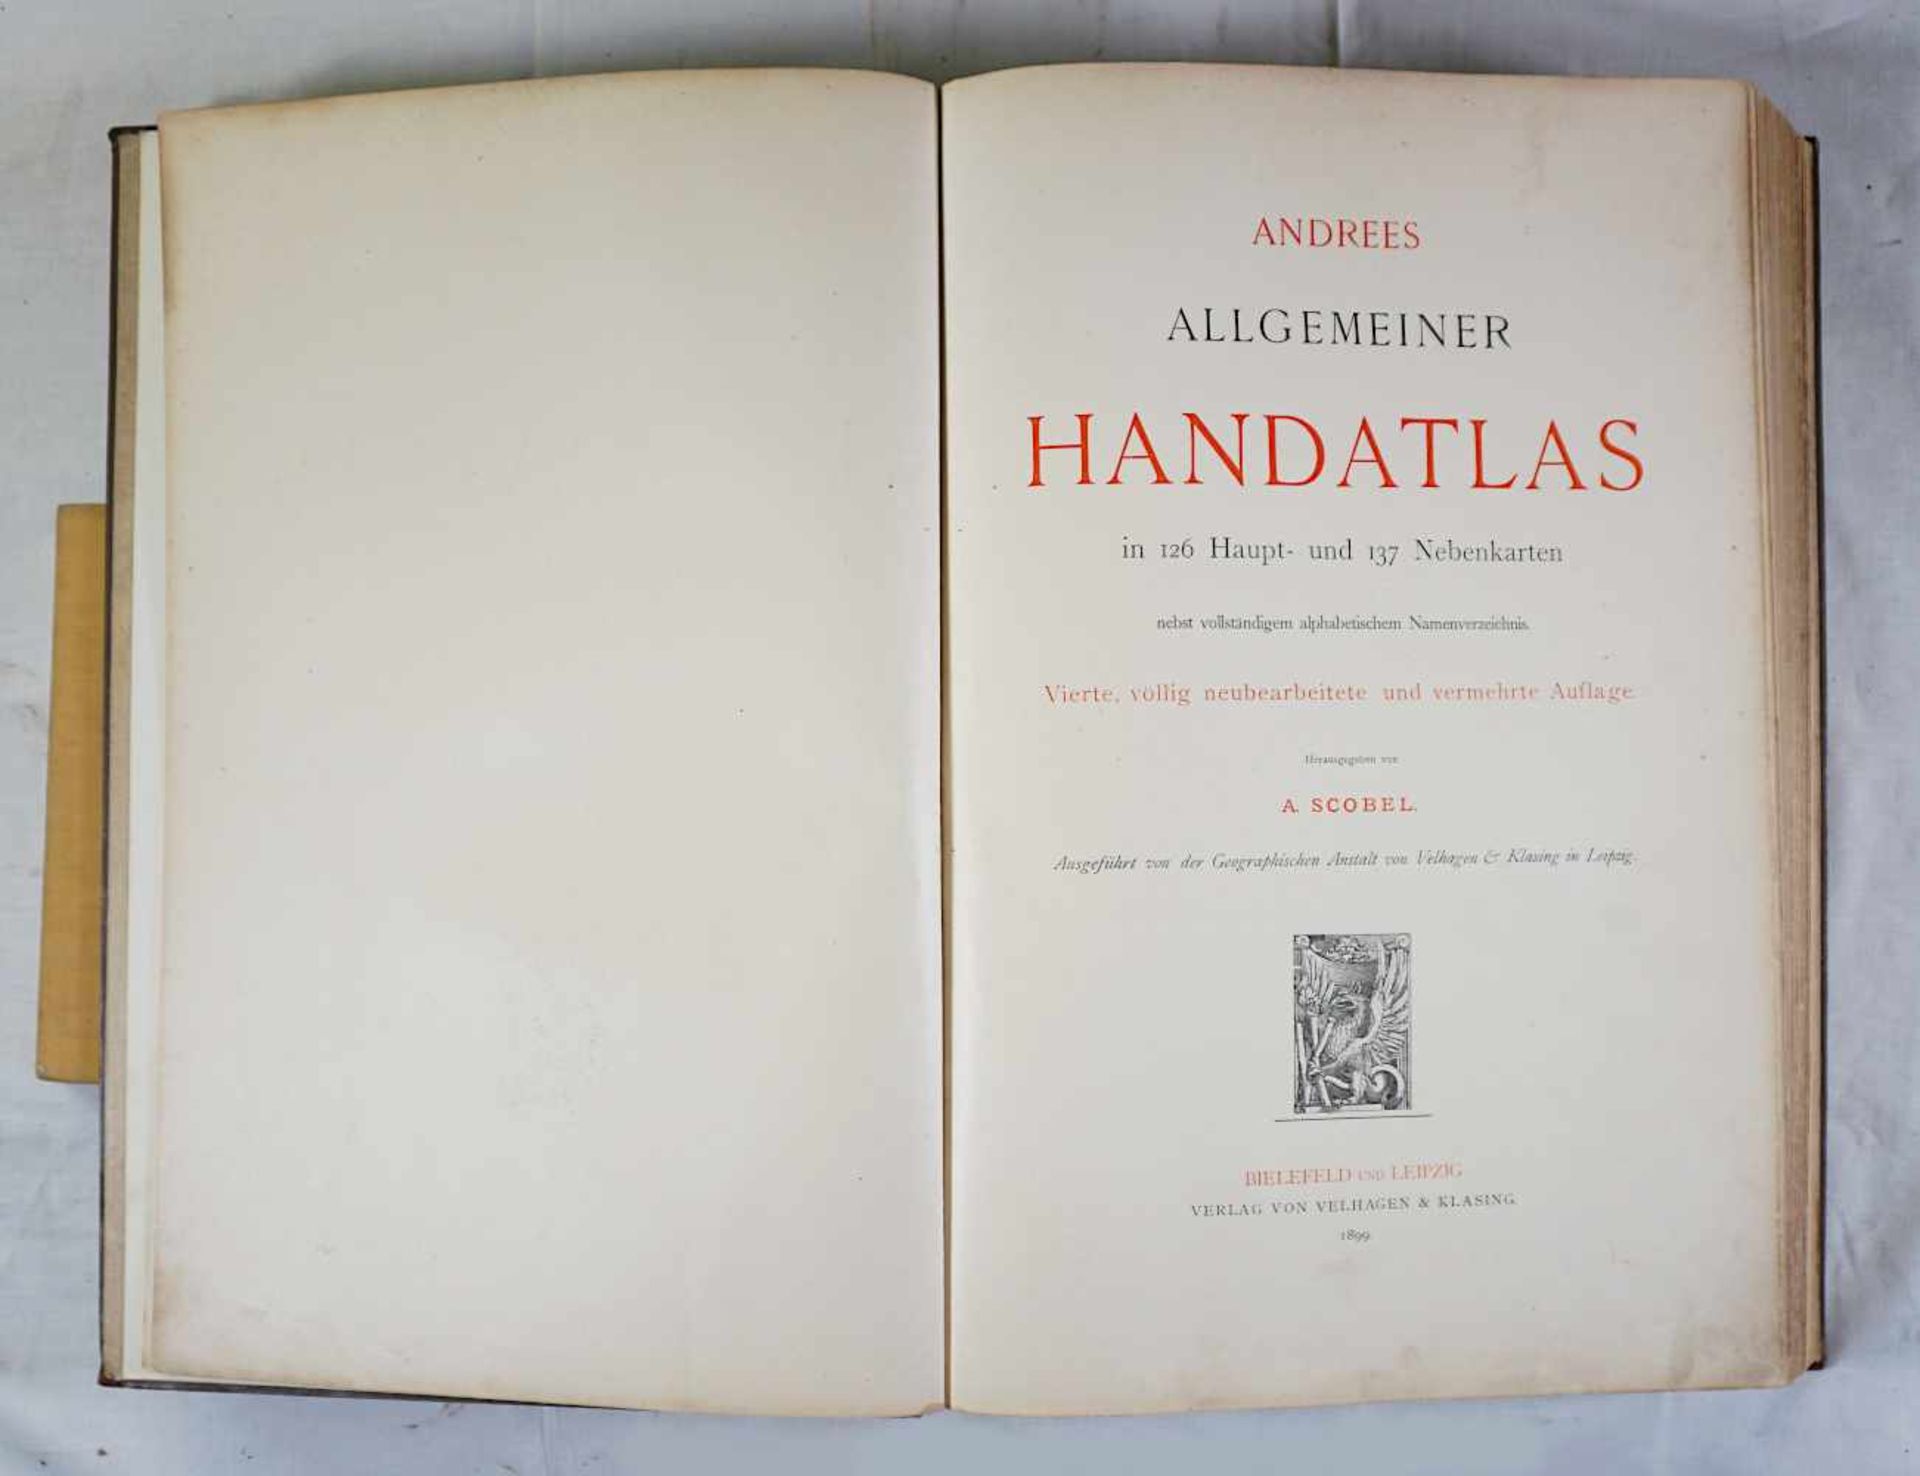 1 Buch "Andees Allgemeiner Handatlas" hrsg. von A. SCOBELVerlag Velhagen & Klasing Bie